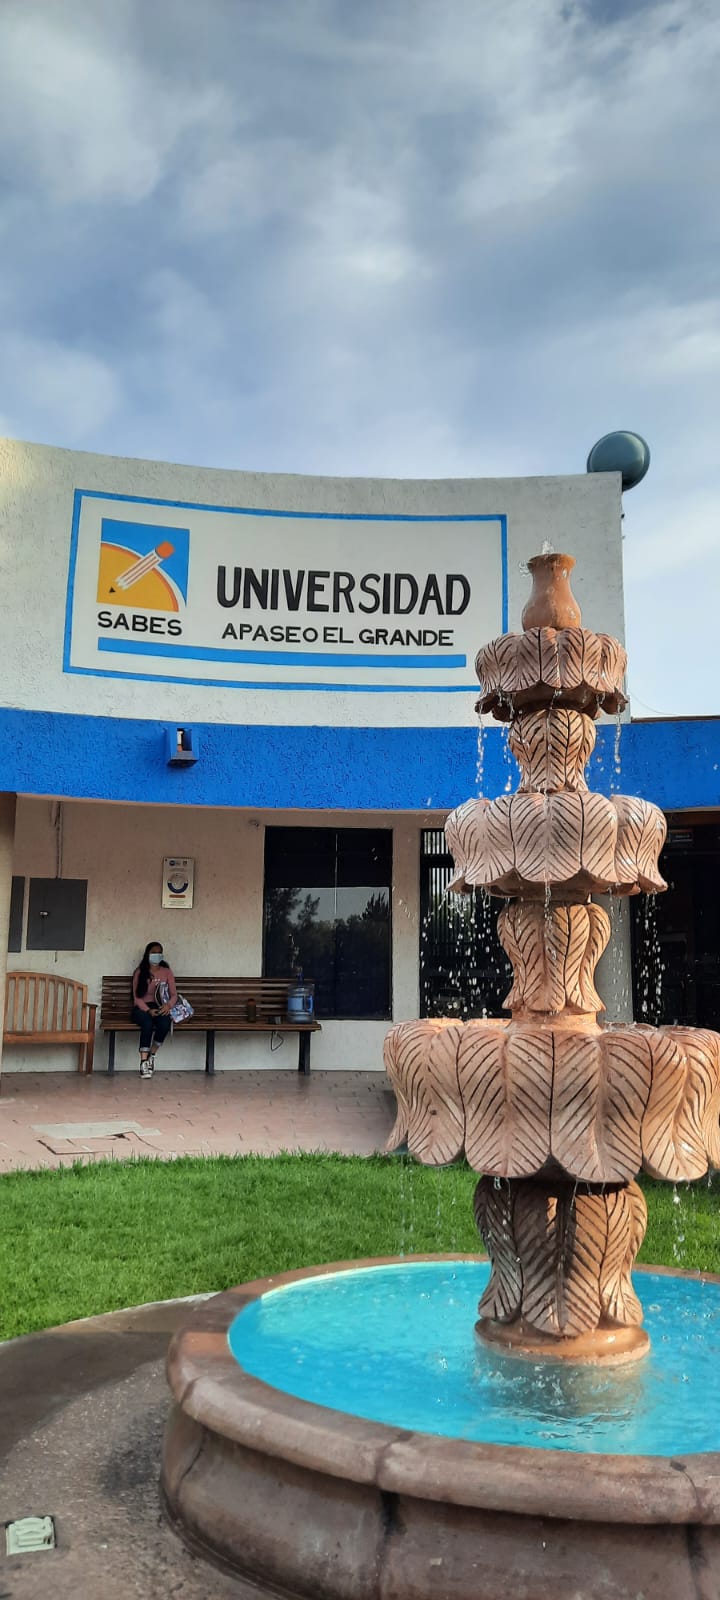 Universidad del SABES (UNIDEG) Apaseo el Grande